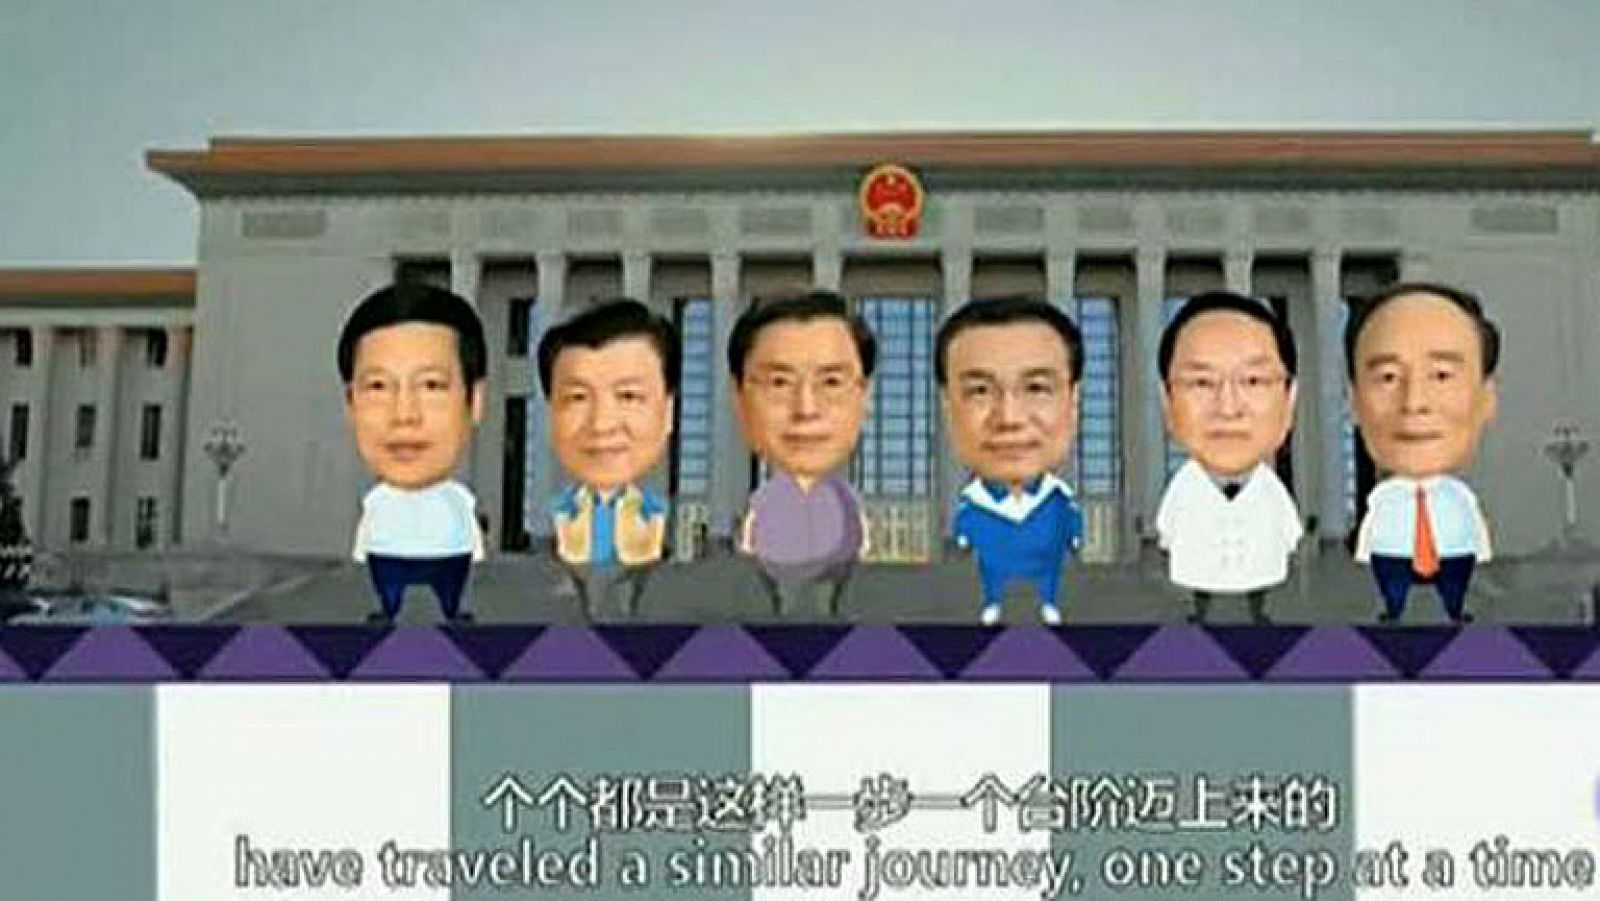  En China, un vídeo de dibujos animados distribuido por internet explica los diferentes modos de llegar a ser presidente. En  Estados Unidos se consigue, según ellos, por el poder del dinero, mientras que en China, sin embargo,  por méritos propios. Se desconoce su autoría, pero el gobierno no lo ha censurado.